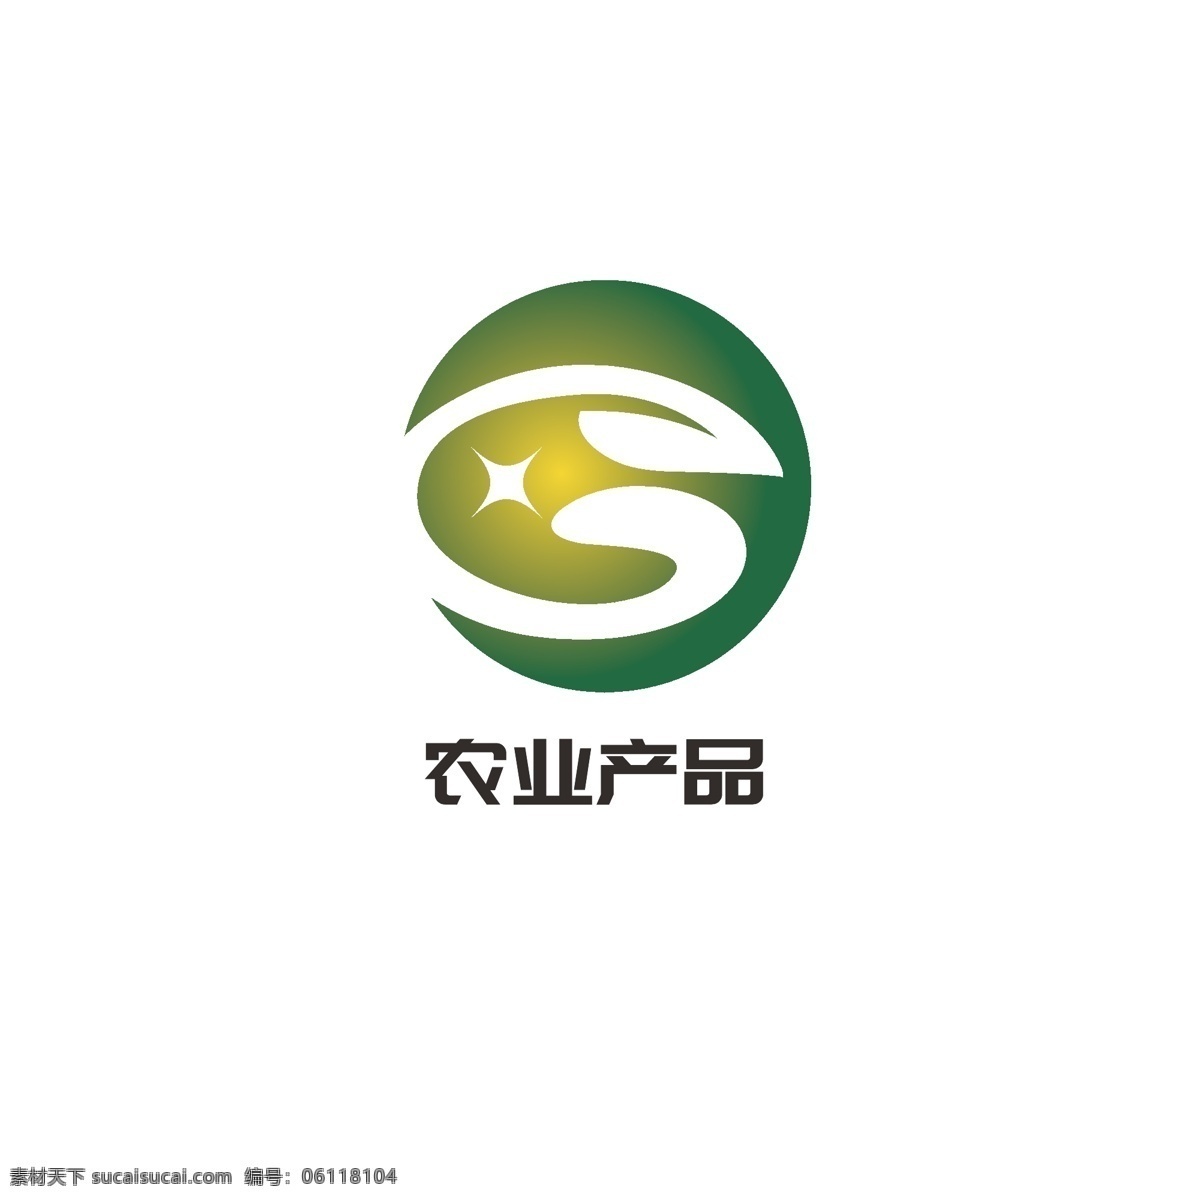 农业 产品 logo 绿色 叶子 星星 简约 字母g 品质